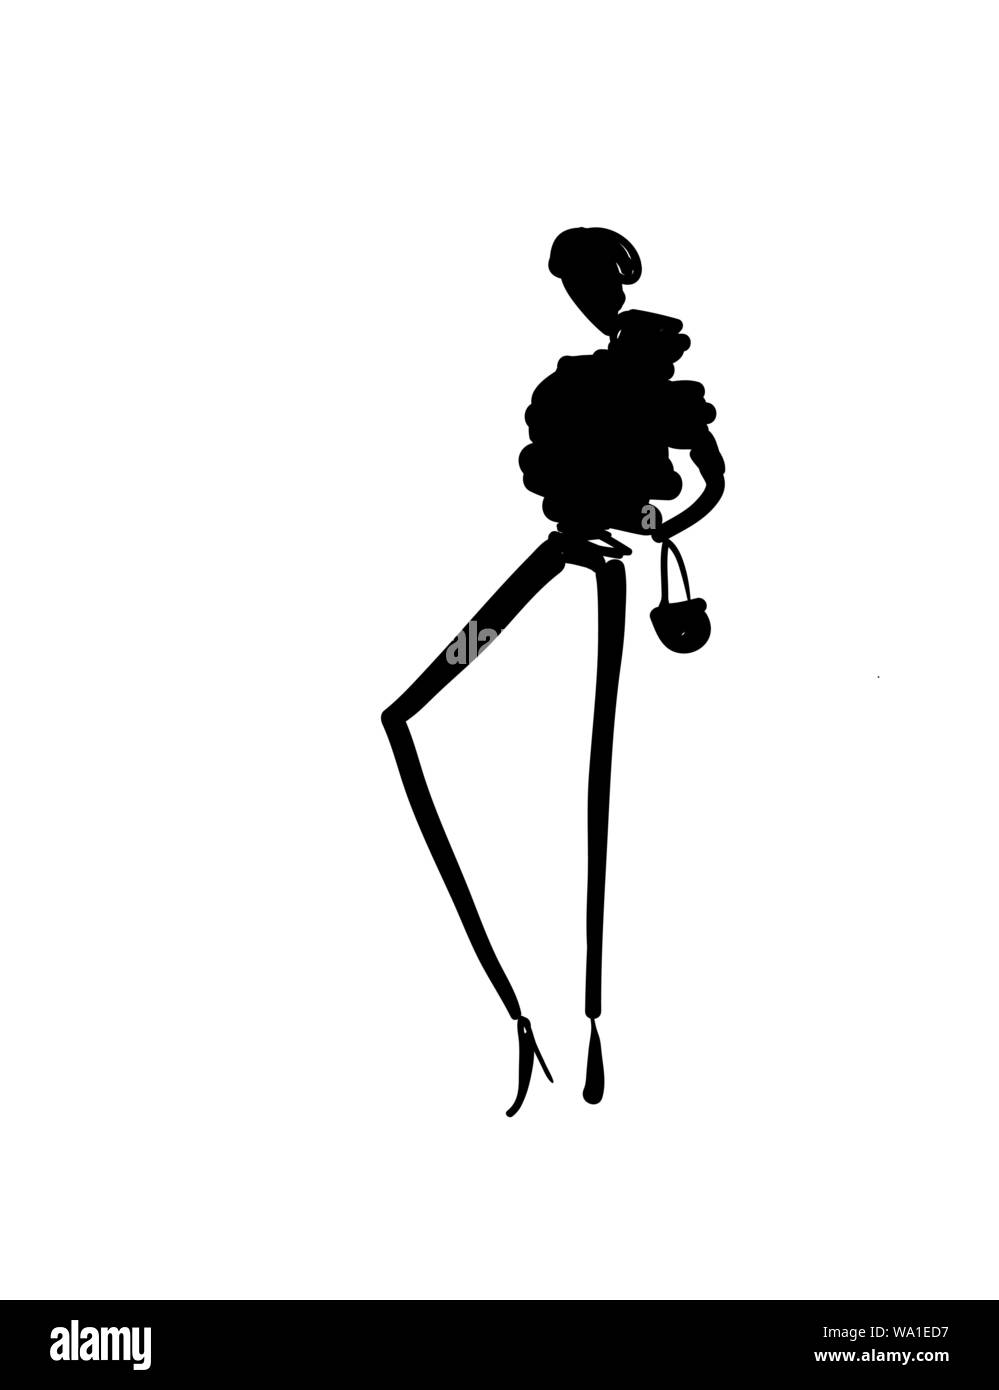 Modelli di moda Bozzetto disegnato a mano silhouette pop art Illustrazione Vettoriale